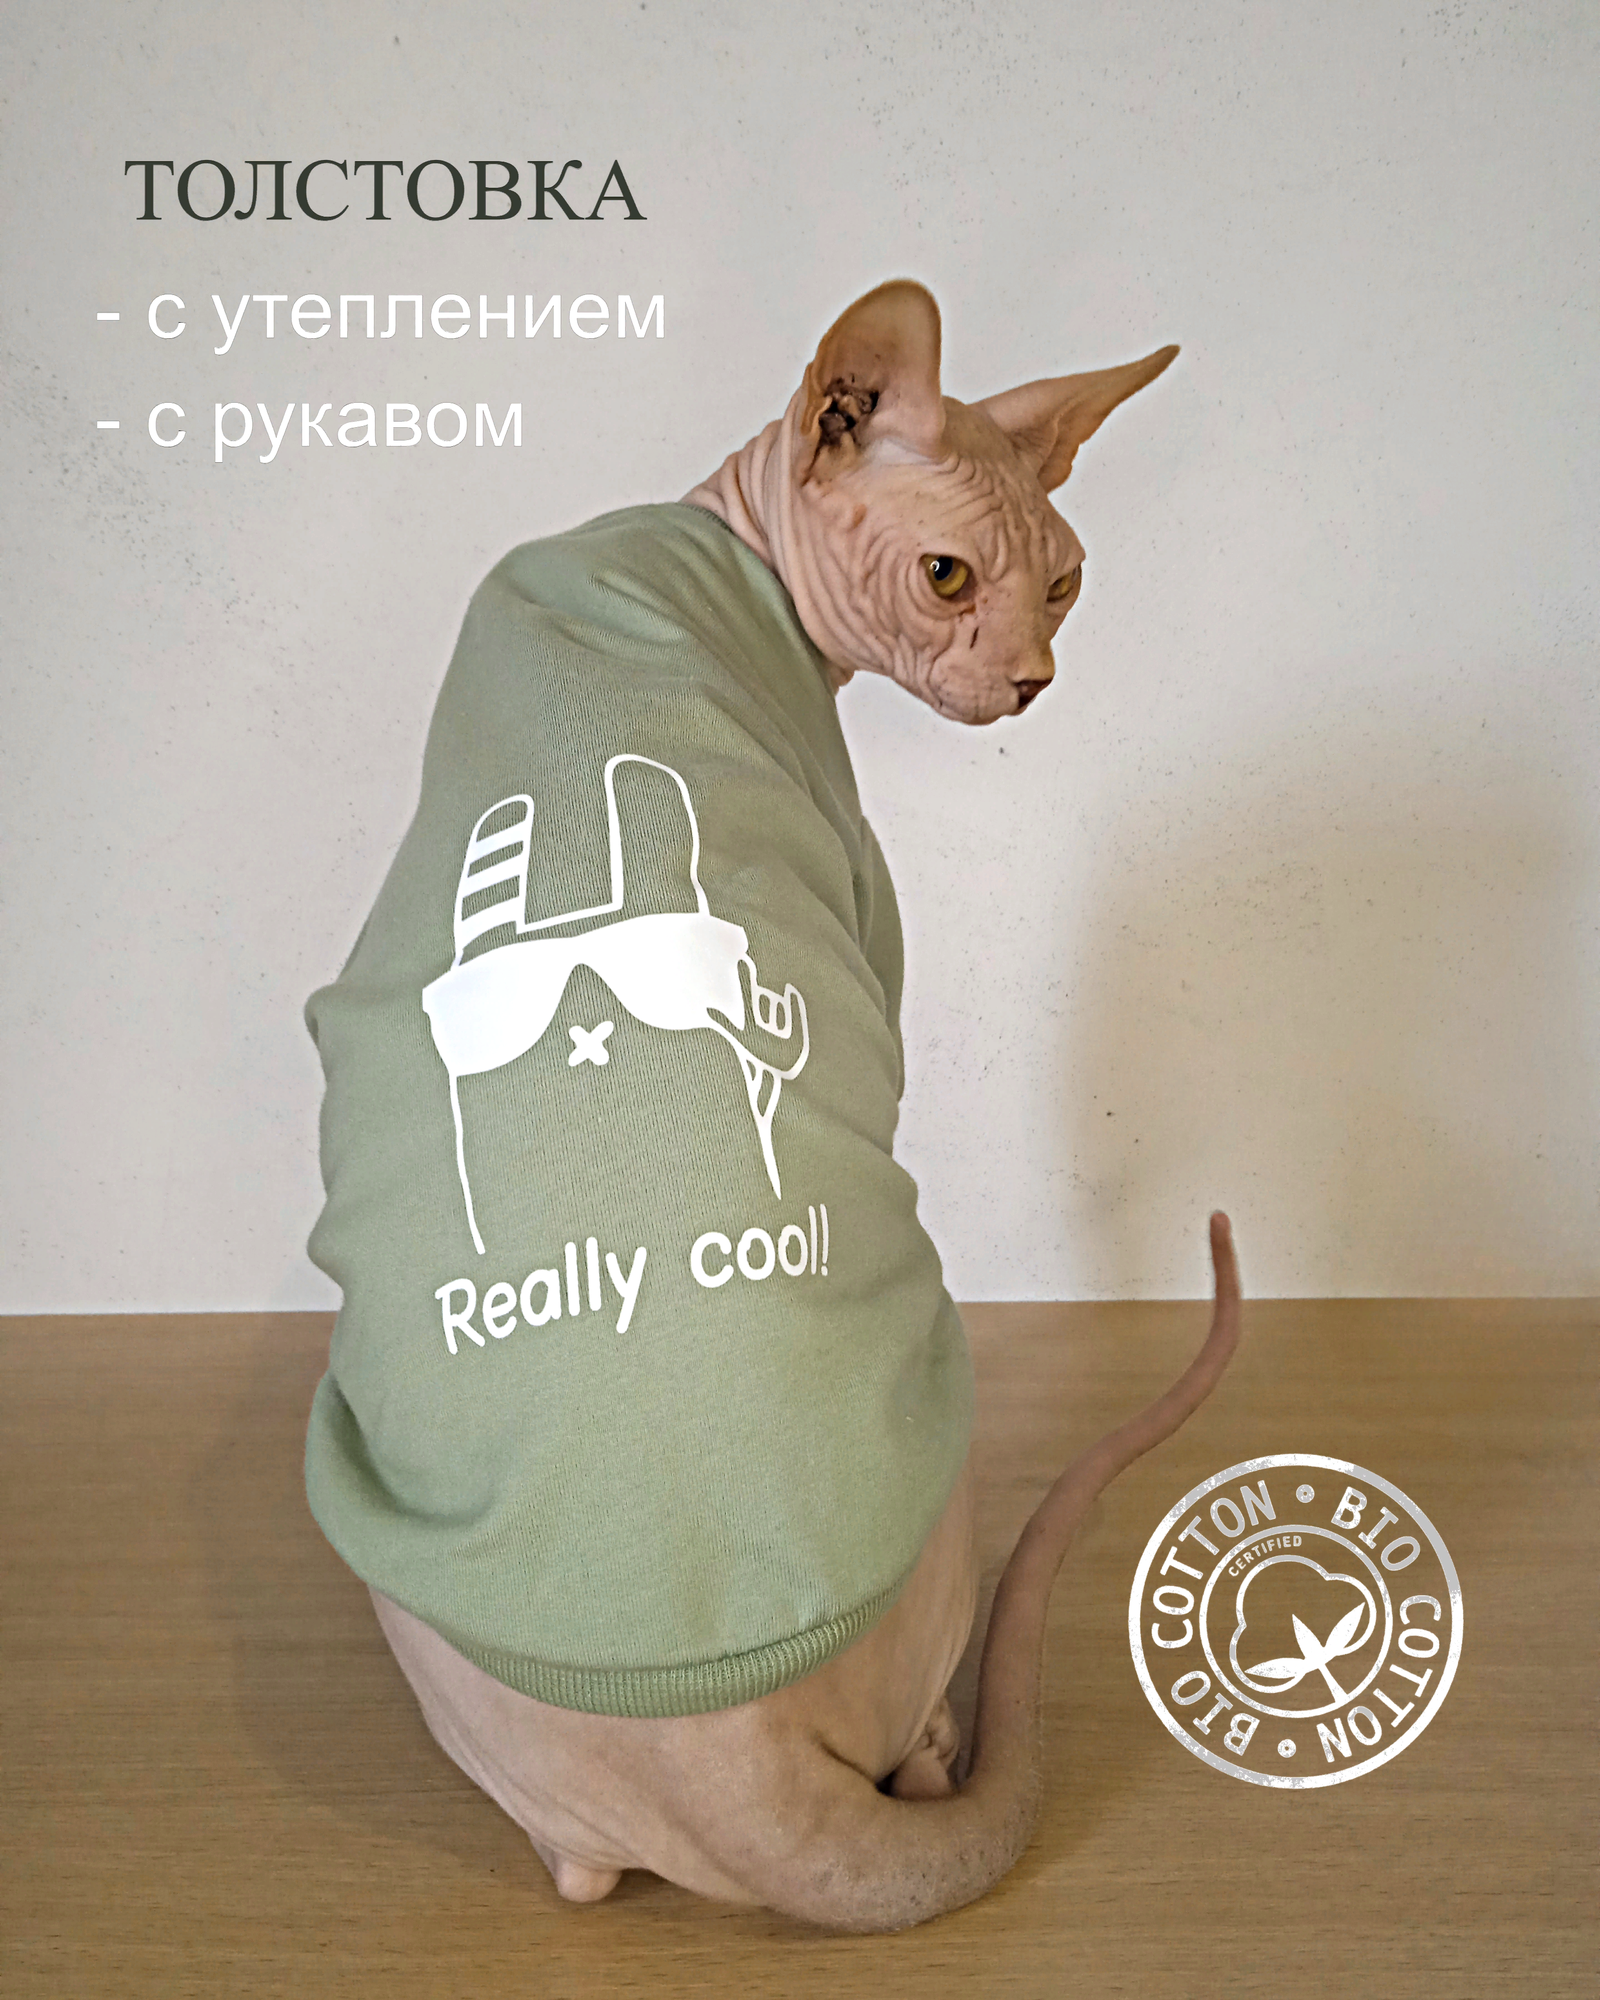 Толстовка "Reali cool" для животных с теплым рукавом от бренда "Котомода" размер S